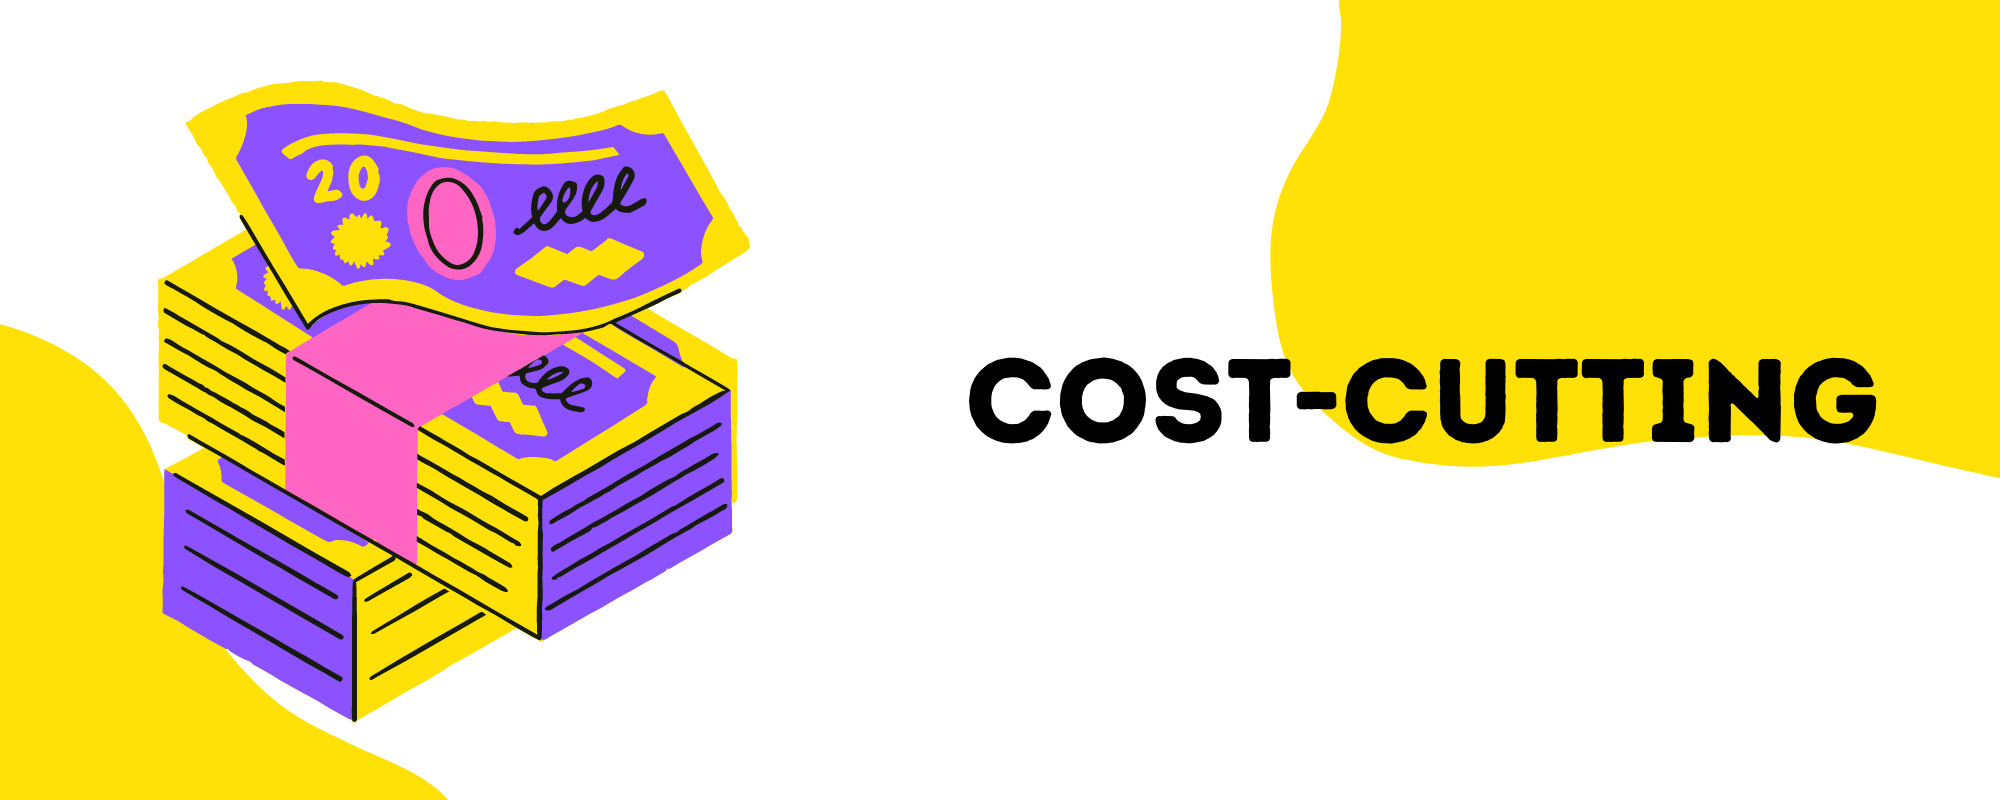 Cost-cutting